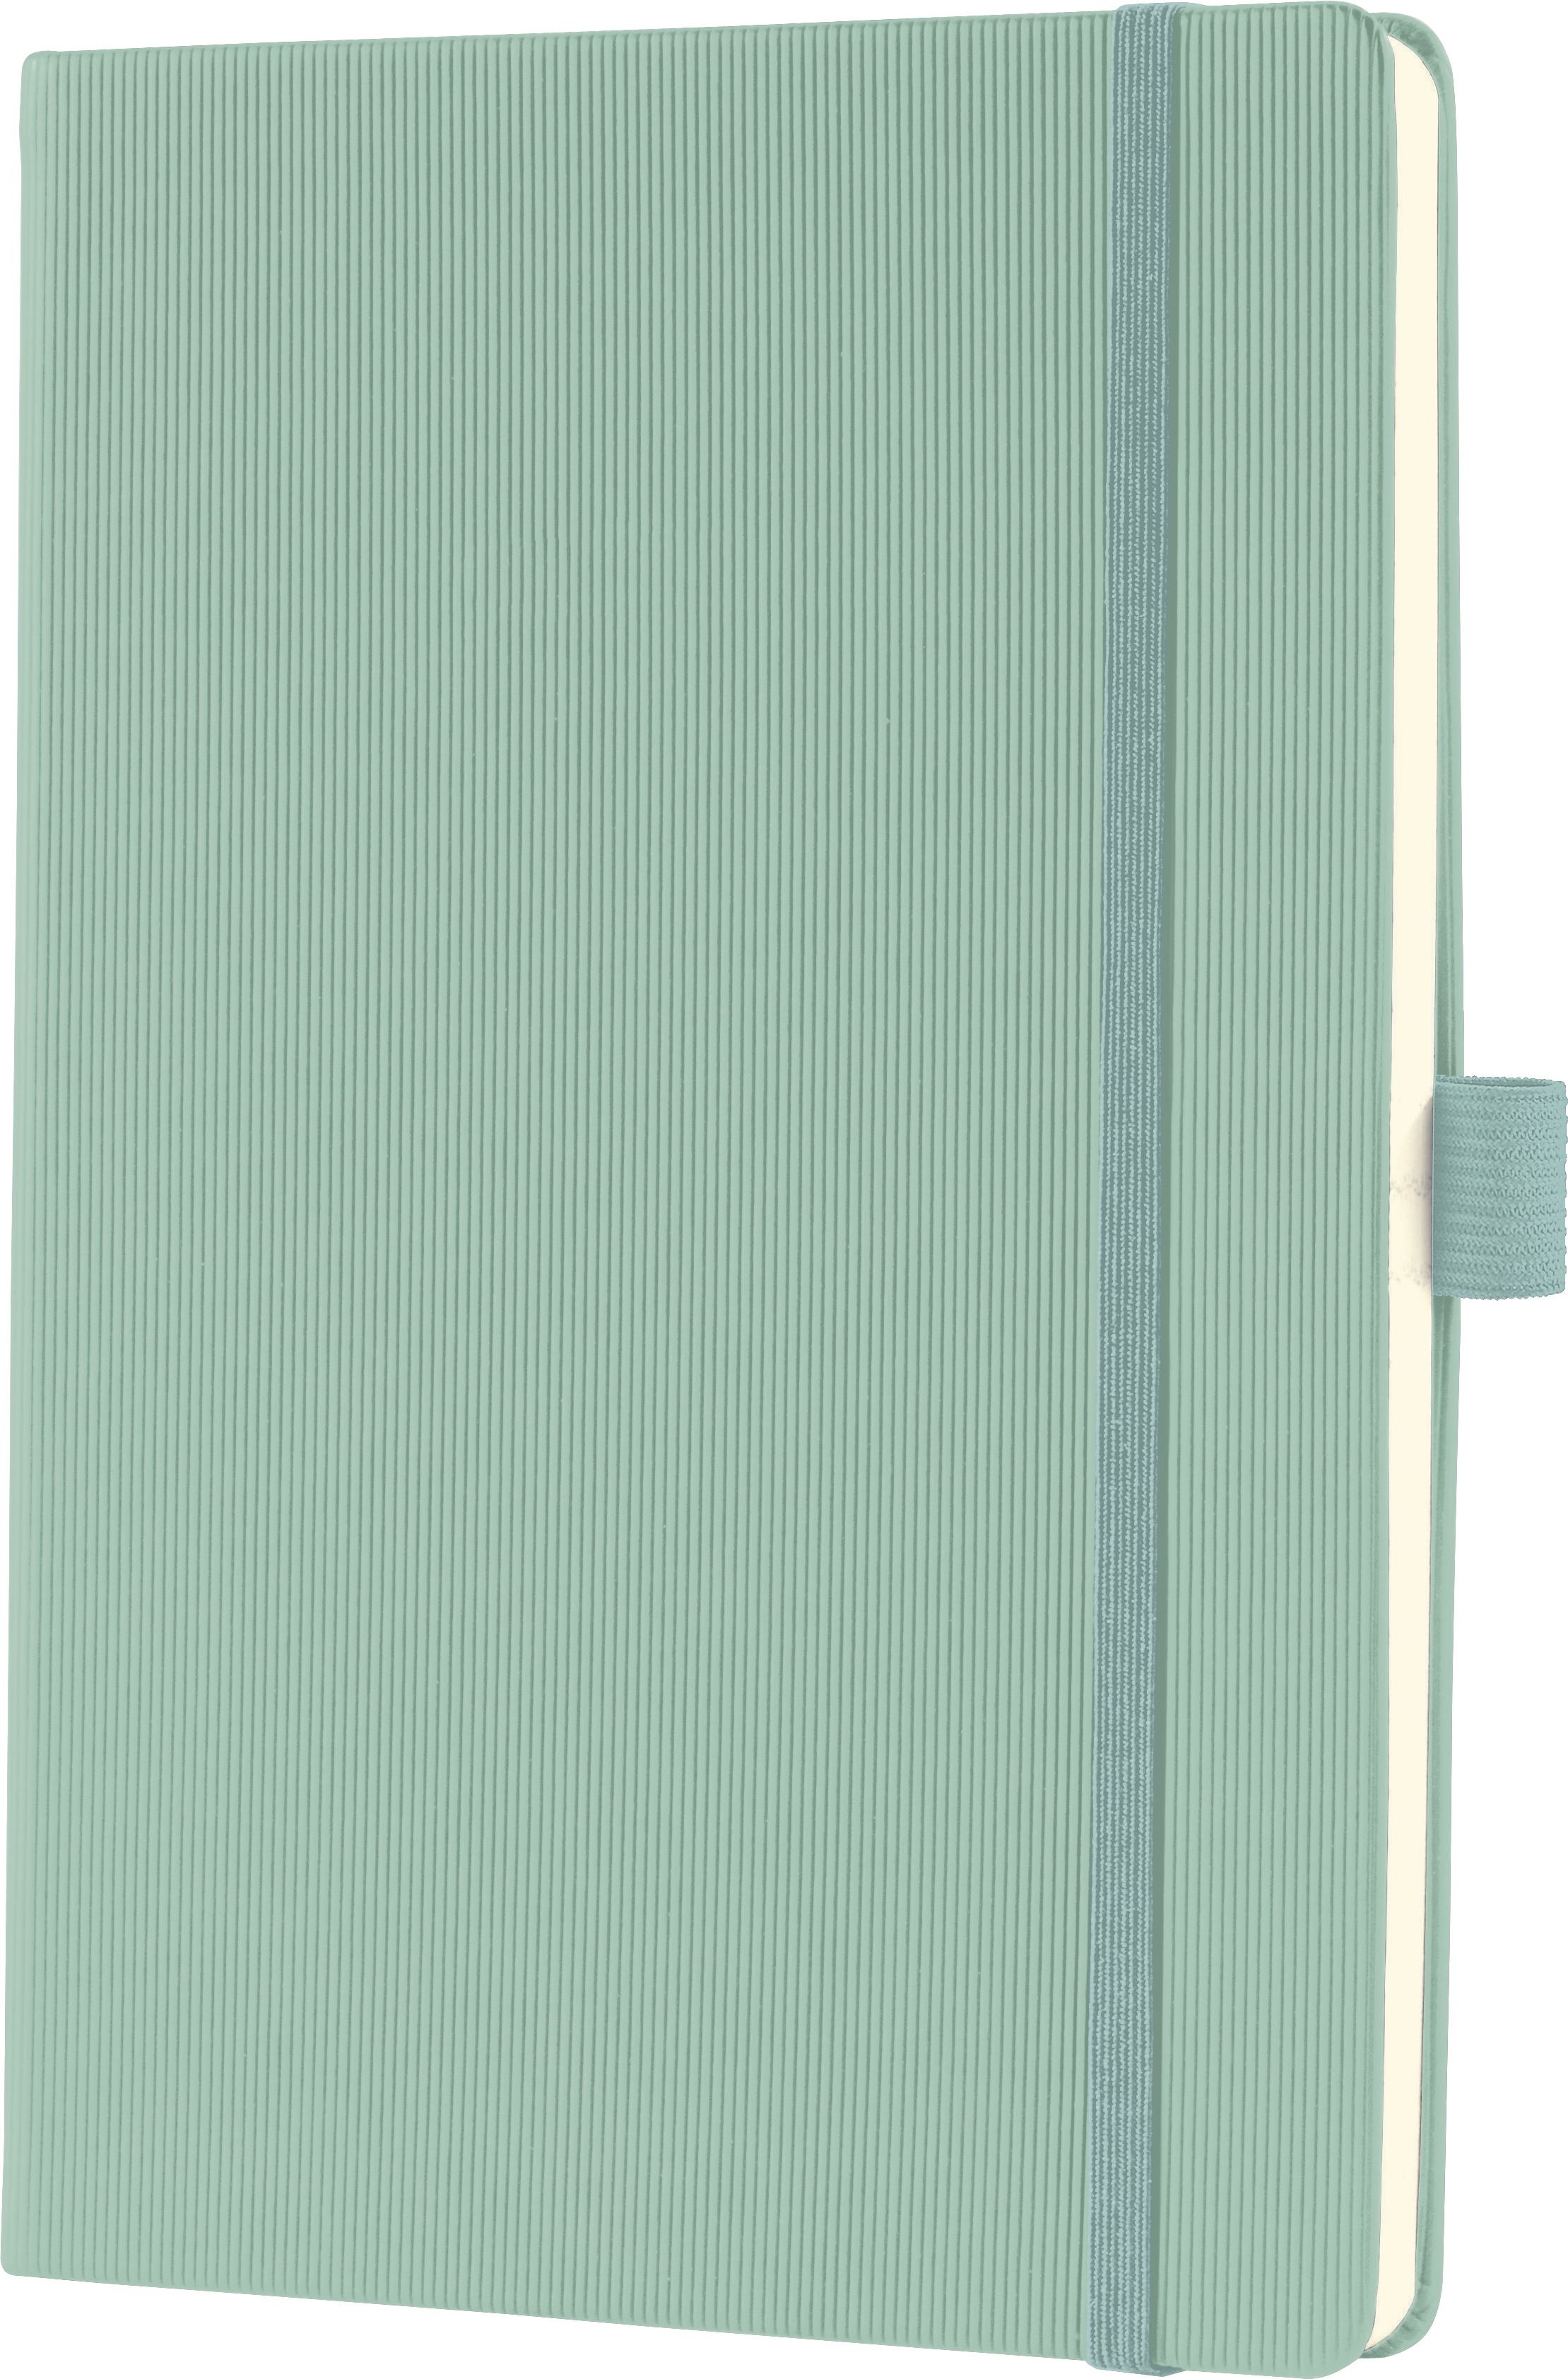 CONCEPTUM Carnet de notes A5 CO682 mint green,quadrillé 194 pages